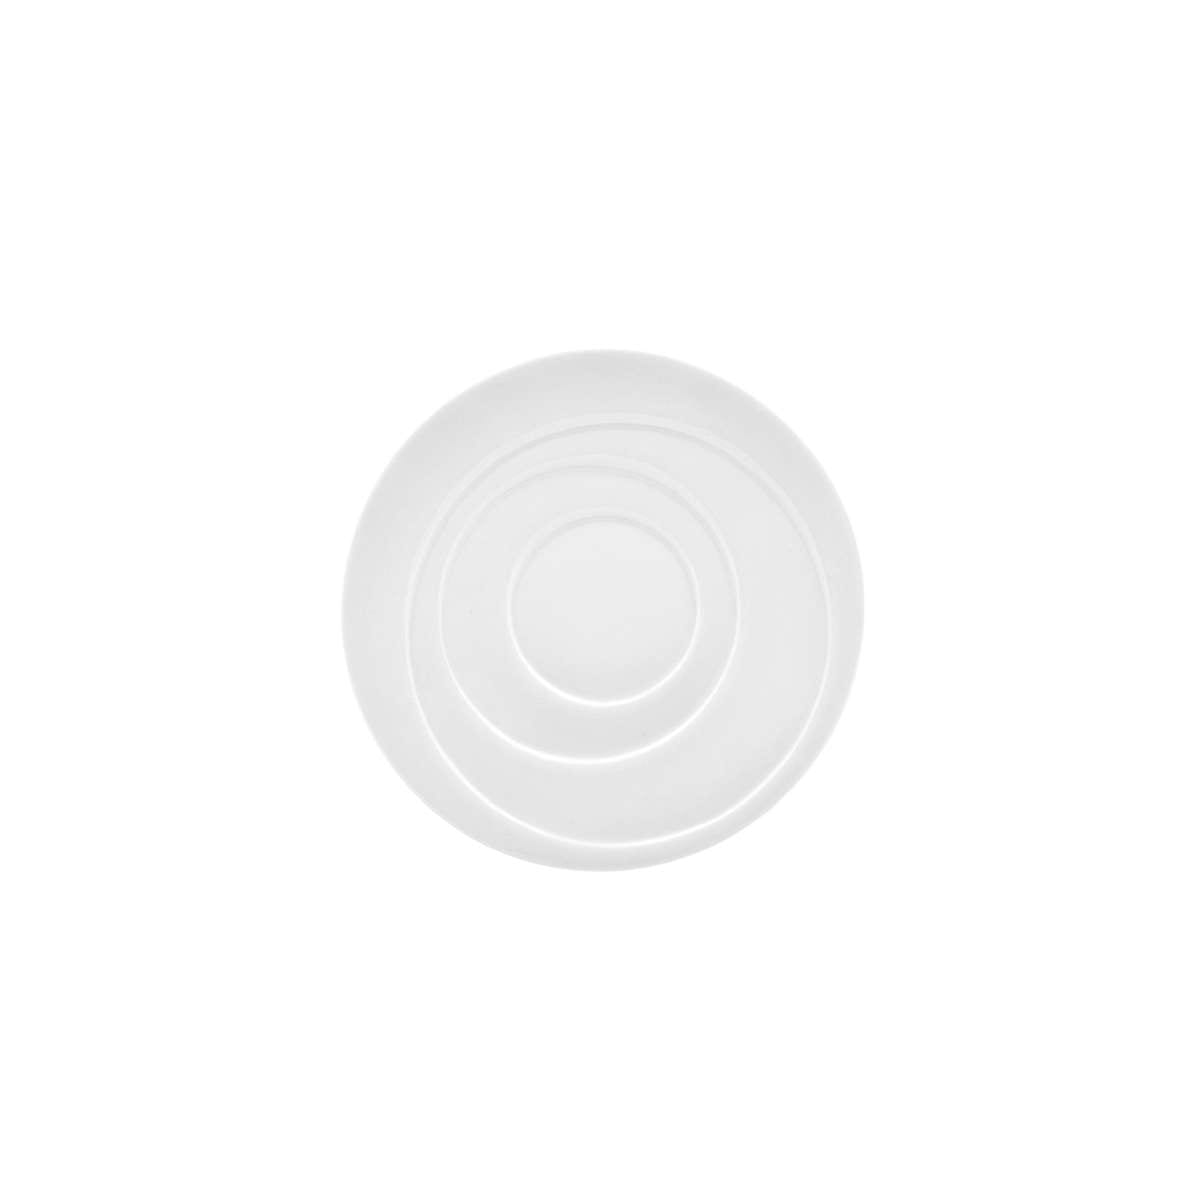 Πιατάκι Για Φλυτζάνι Πορσελάνης Λευκό Art Et Lumiere 15,5εκ. 05957 (Υλικό: Πορσελάνη, Χρώμα: Λευκό) – Art Et Lumiere – lumiere_05957